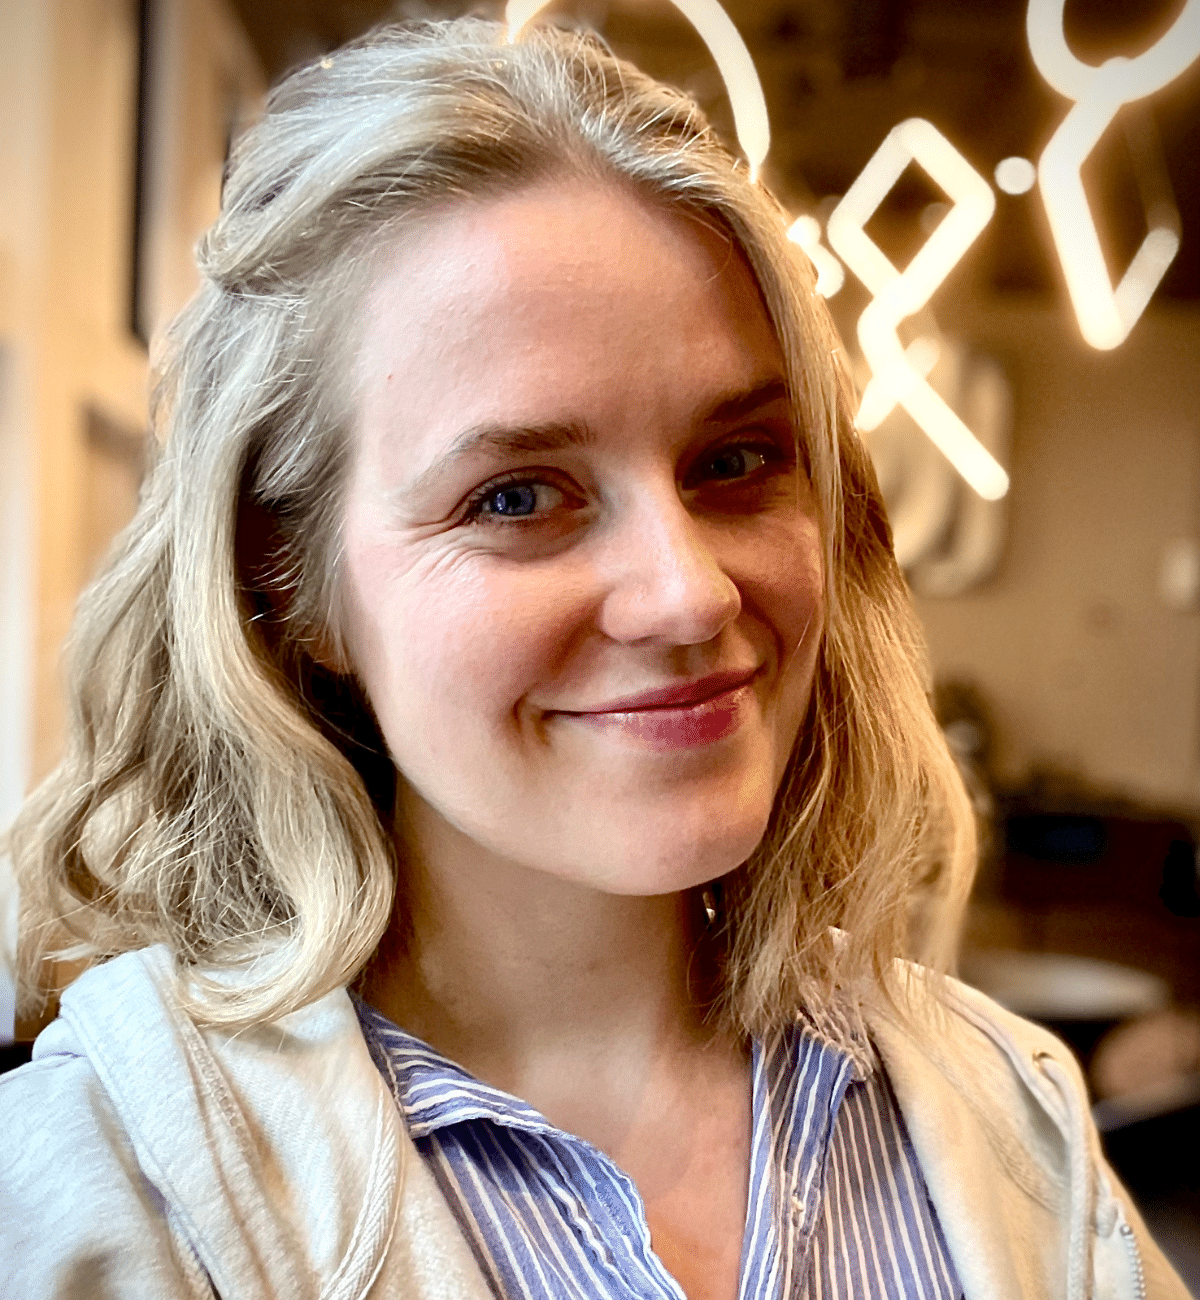 Portrettbilde av Ane Løvereide, en ung kvinne som smiler til kamera. Hun har kort, blondt hår og en lys skjorte.